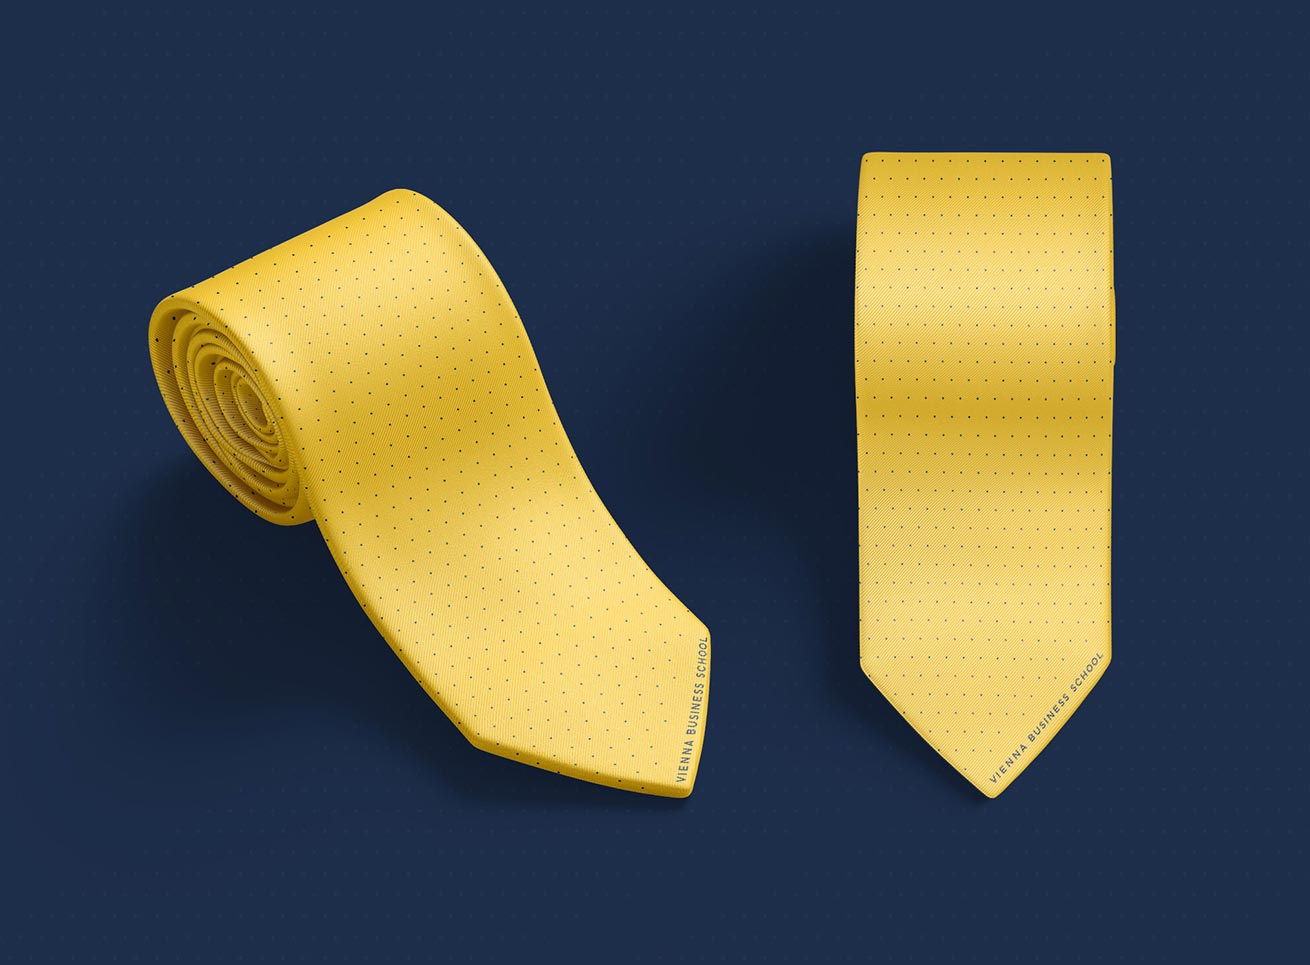 Vienna Business School Krawatte Grafikdesign